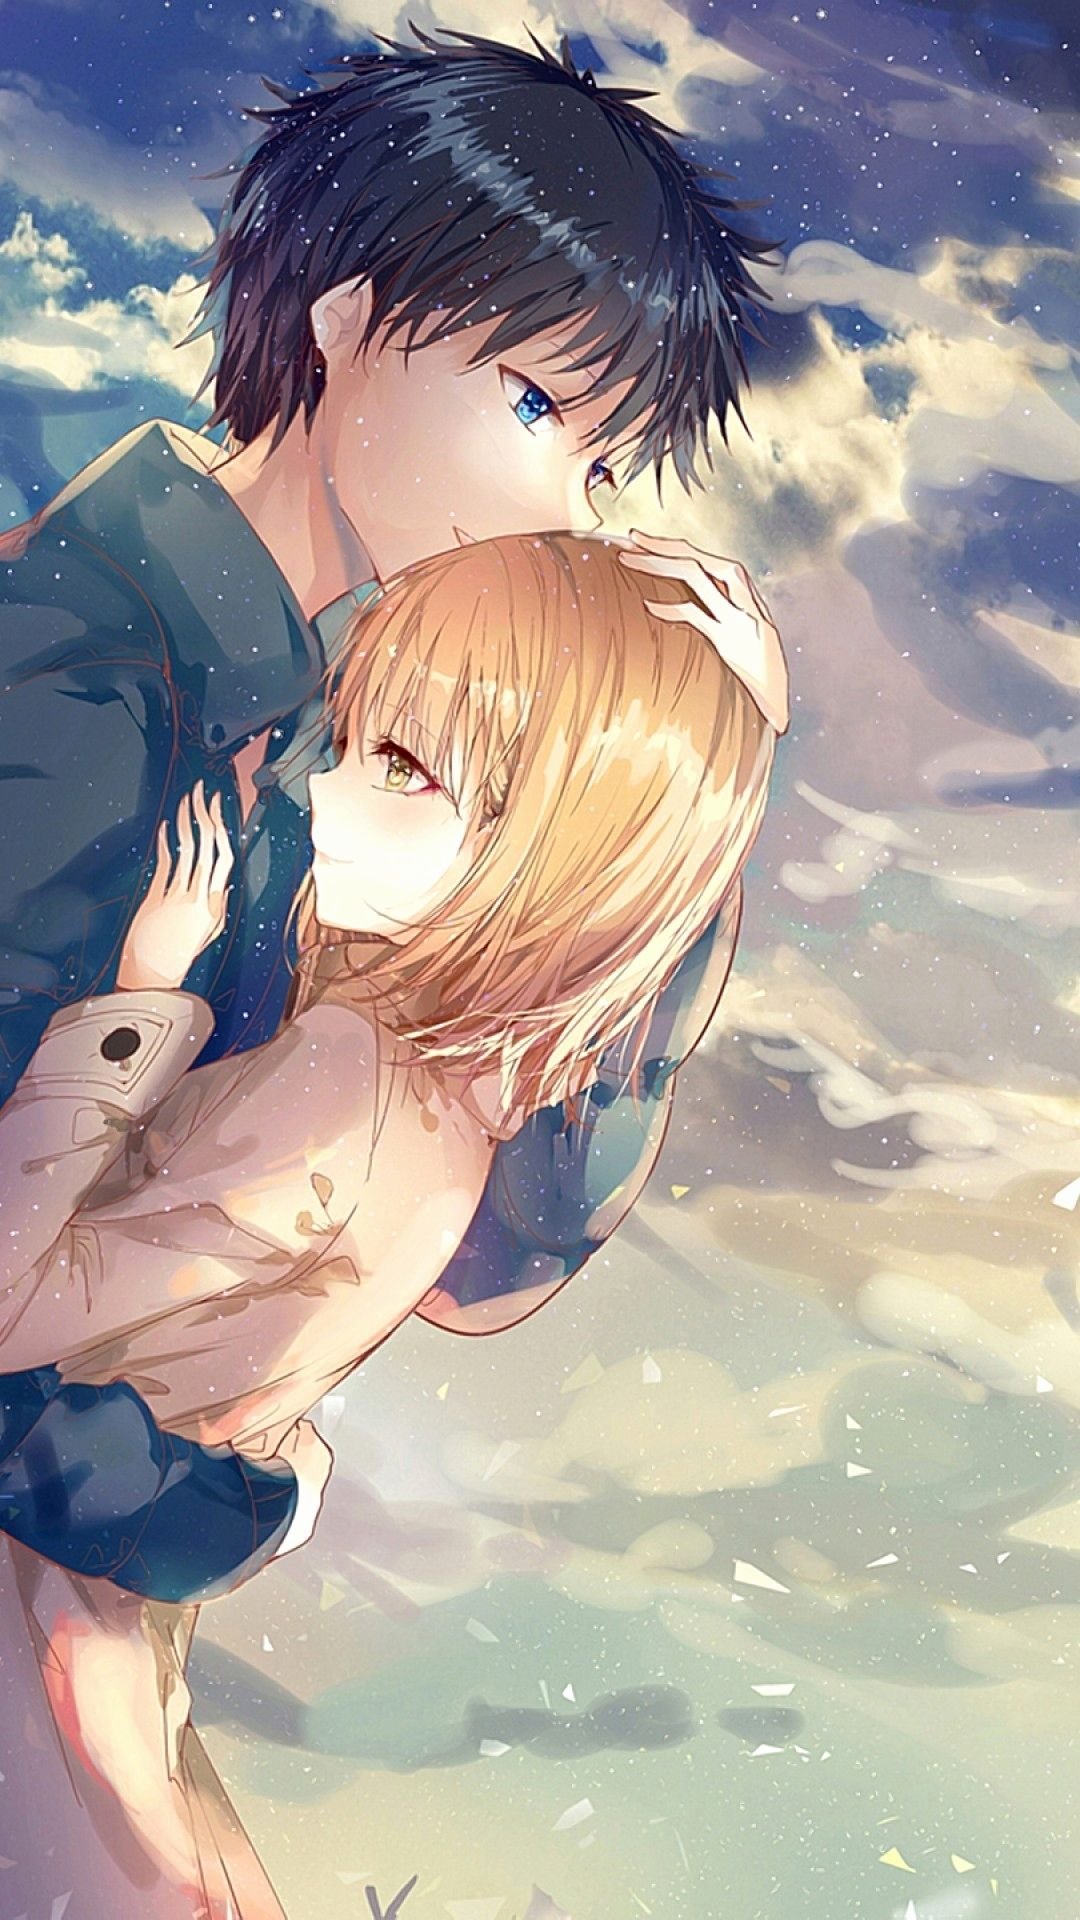 Anime couple sad hug HD wallpapers | Pxfuel